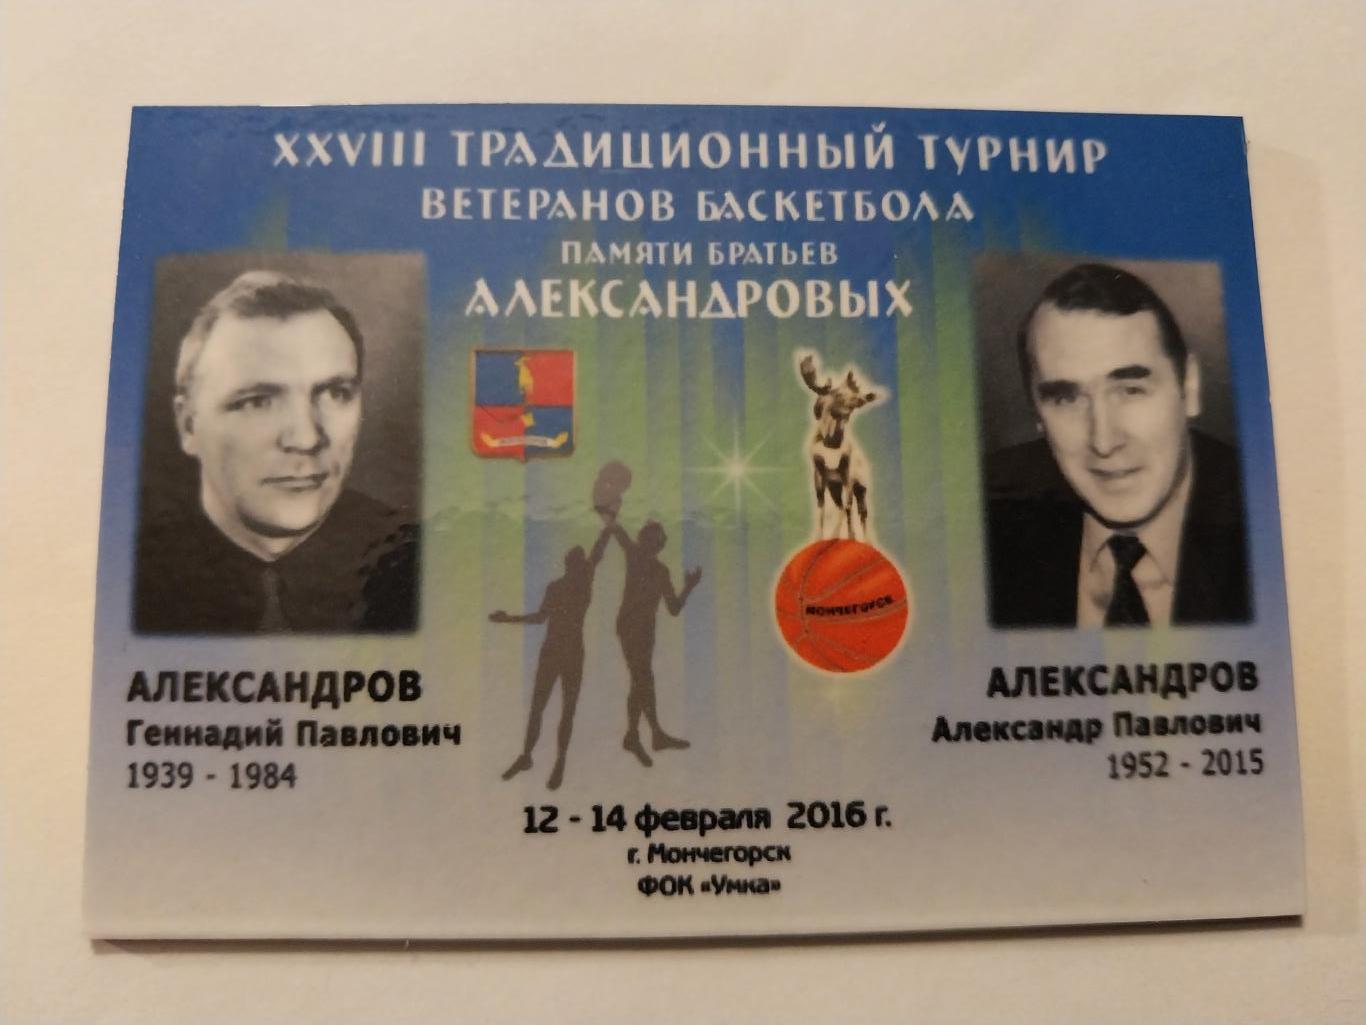 Турнир ветеранов баскетбола Мончегорск 12-14.02.2016